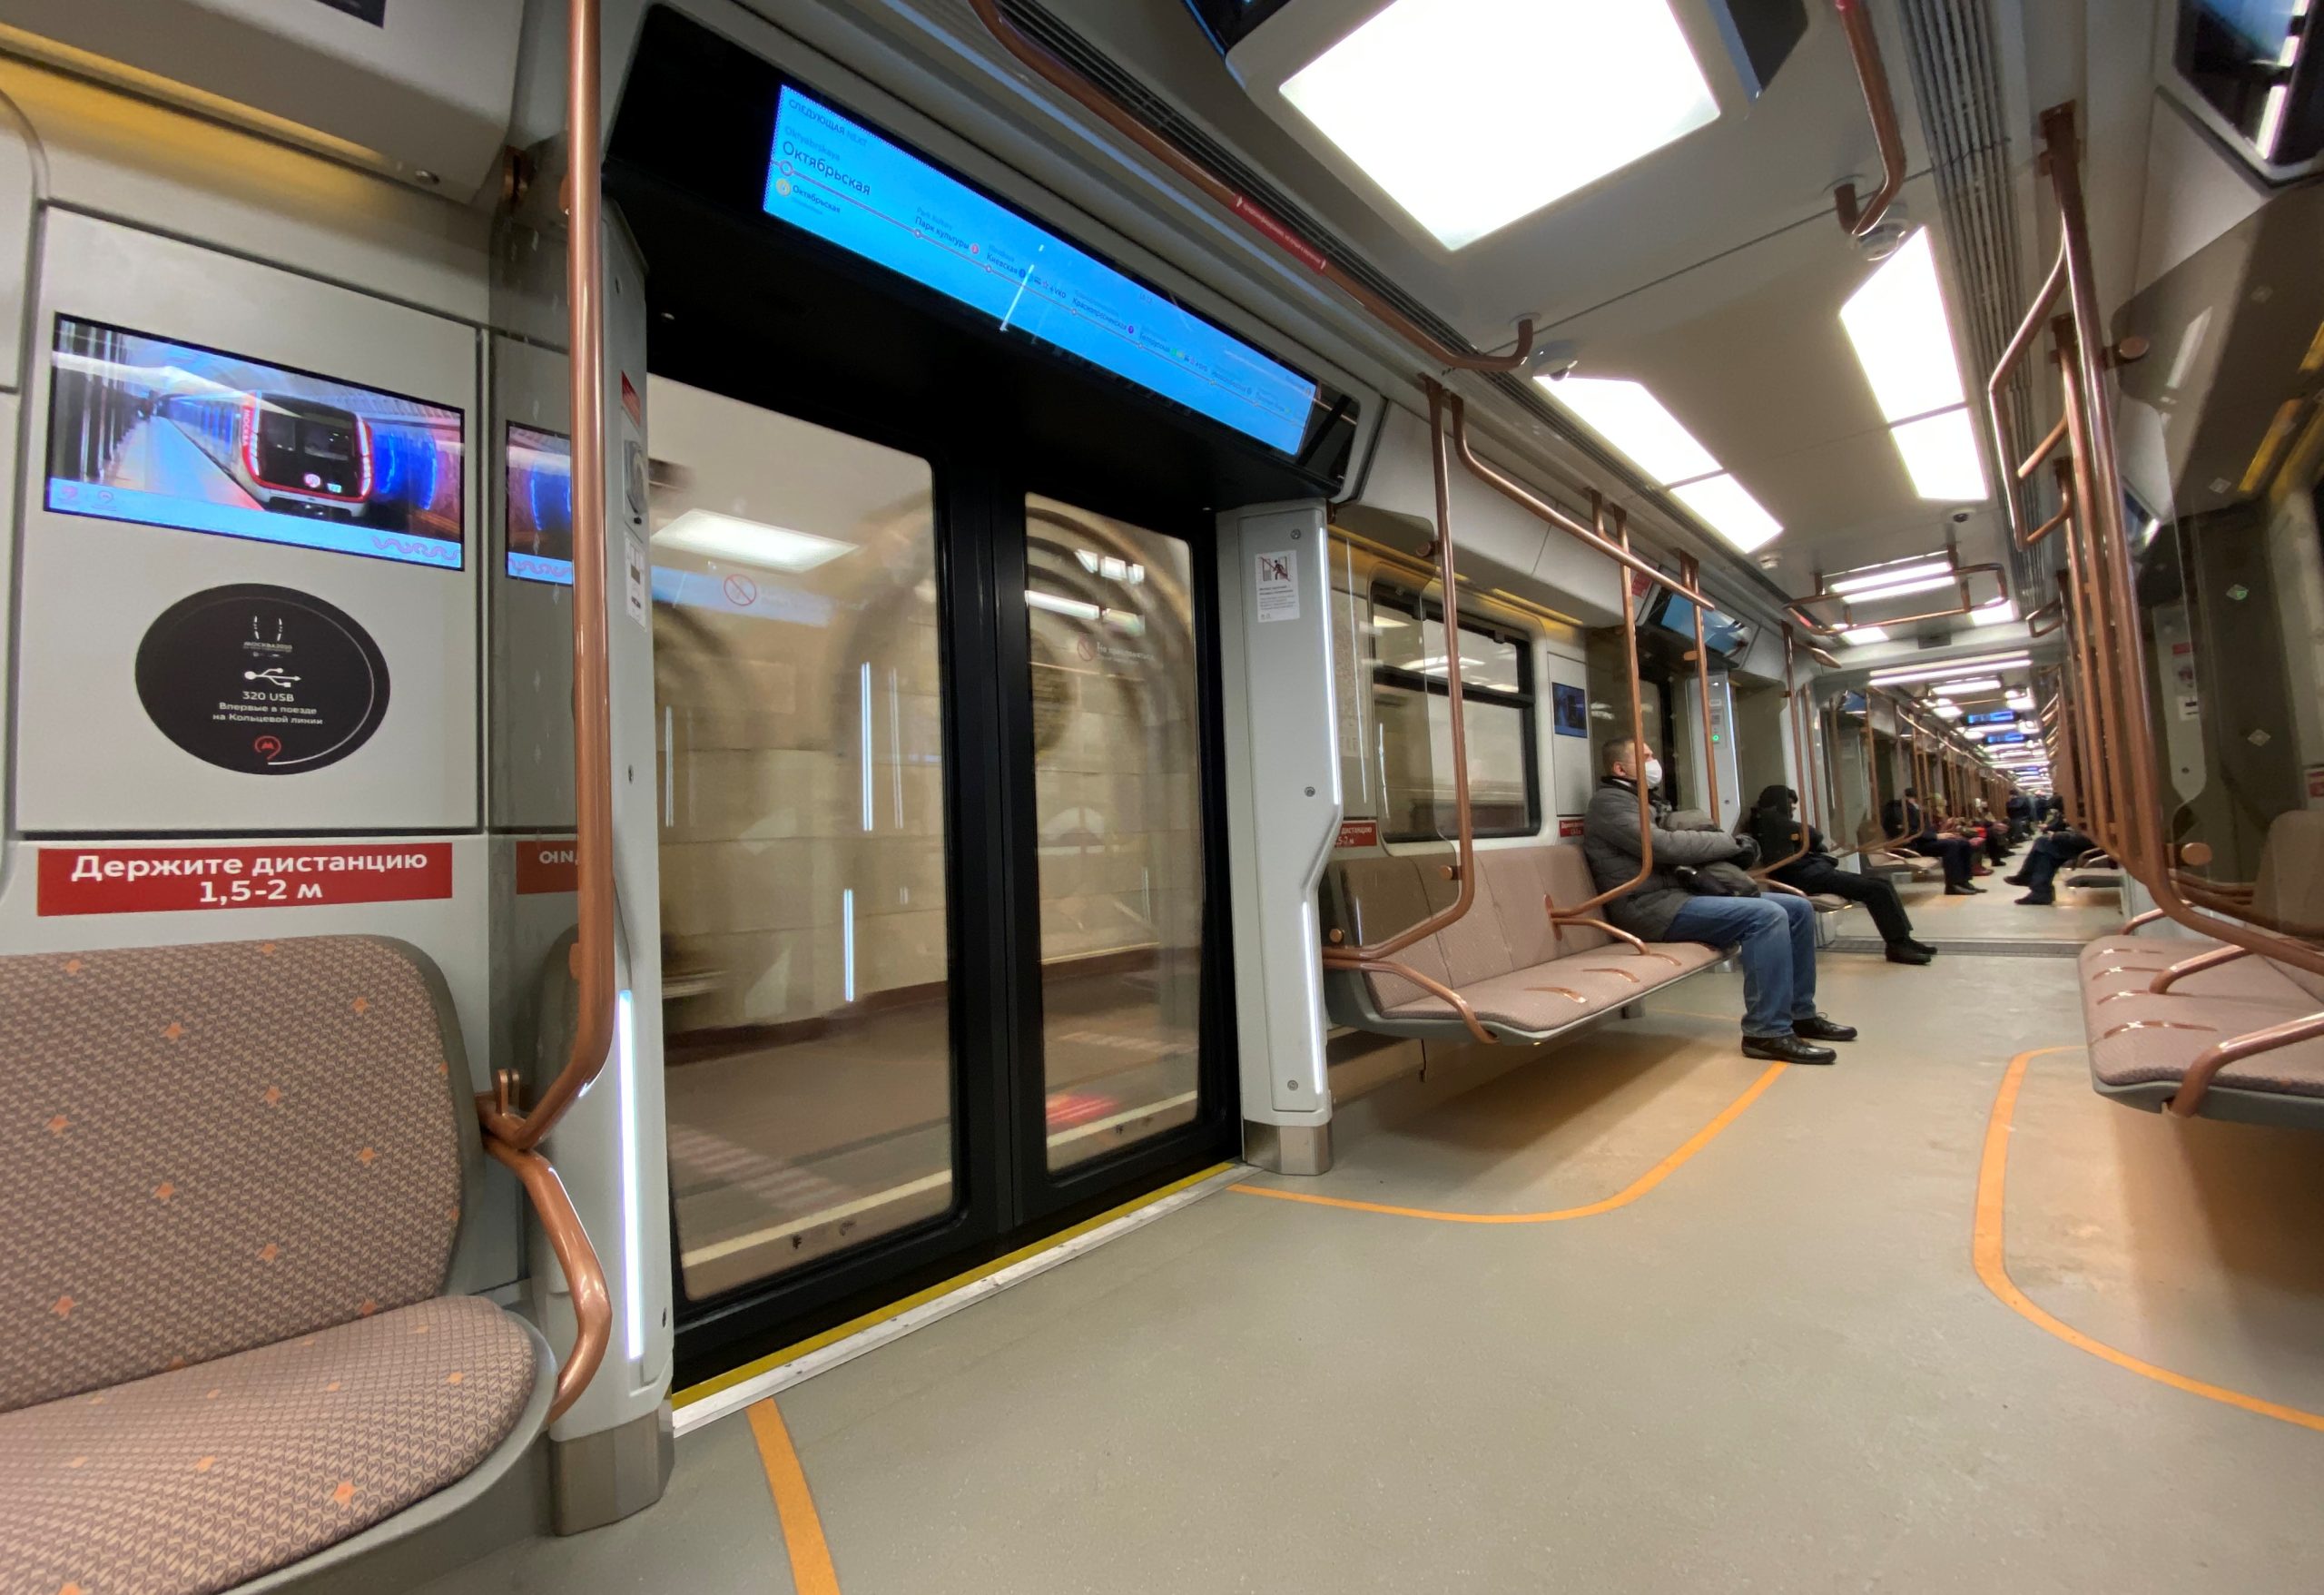 Двойные системы безопасности установили в новых вагонах метро